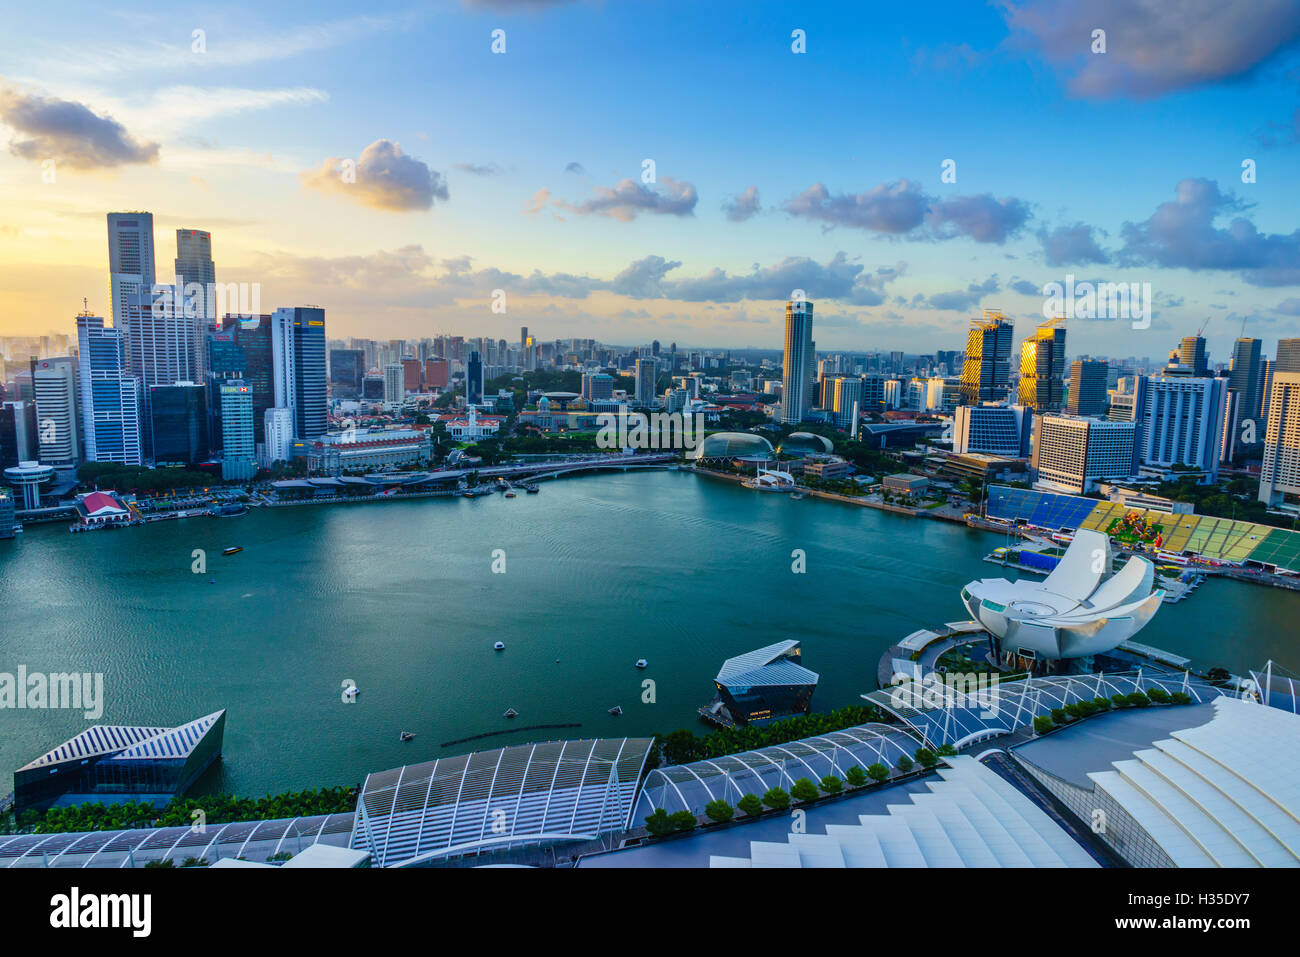 Las torres del distrito central de negocios y a la bahía de Marina al atardecer, Singapur Foto de stock